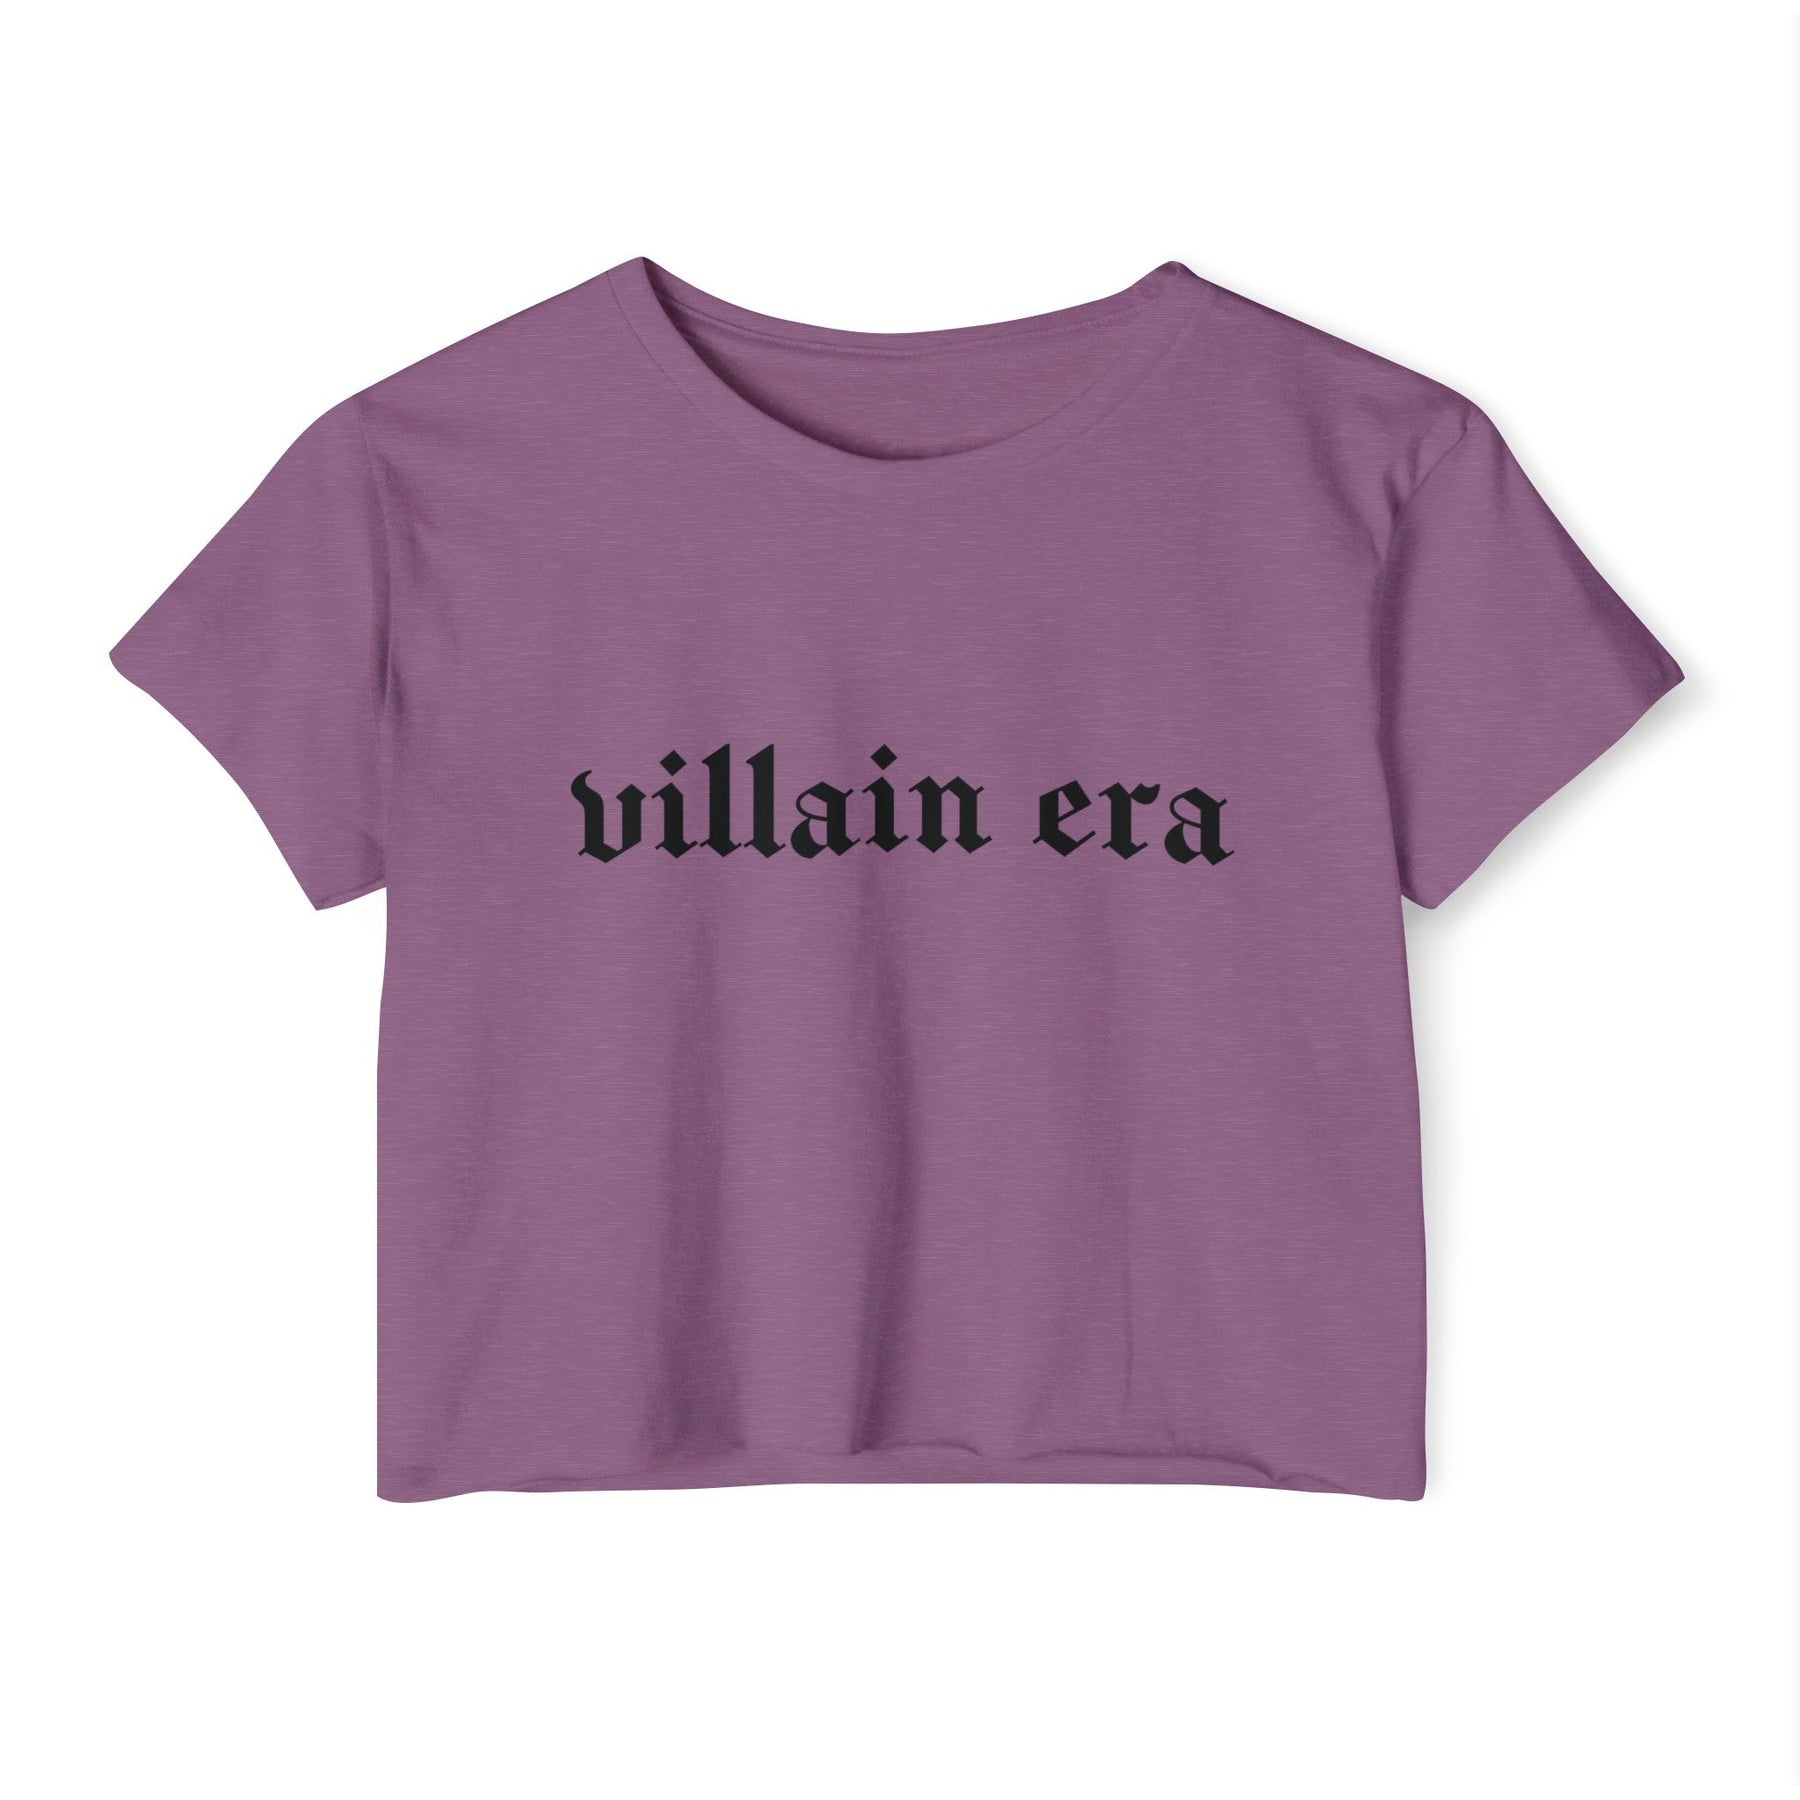 Villain Era Women's Lightweight Crop Top - Goth Cloth Co.T - Shirt92810108469188492372